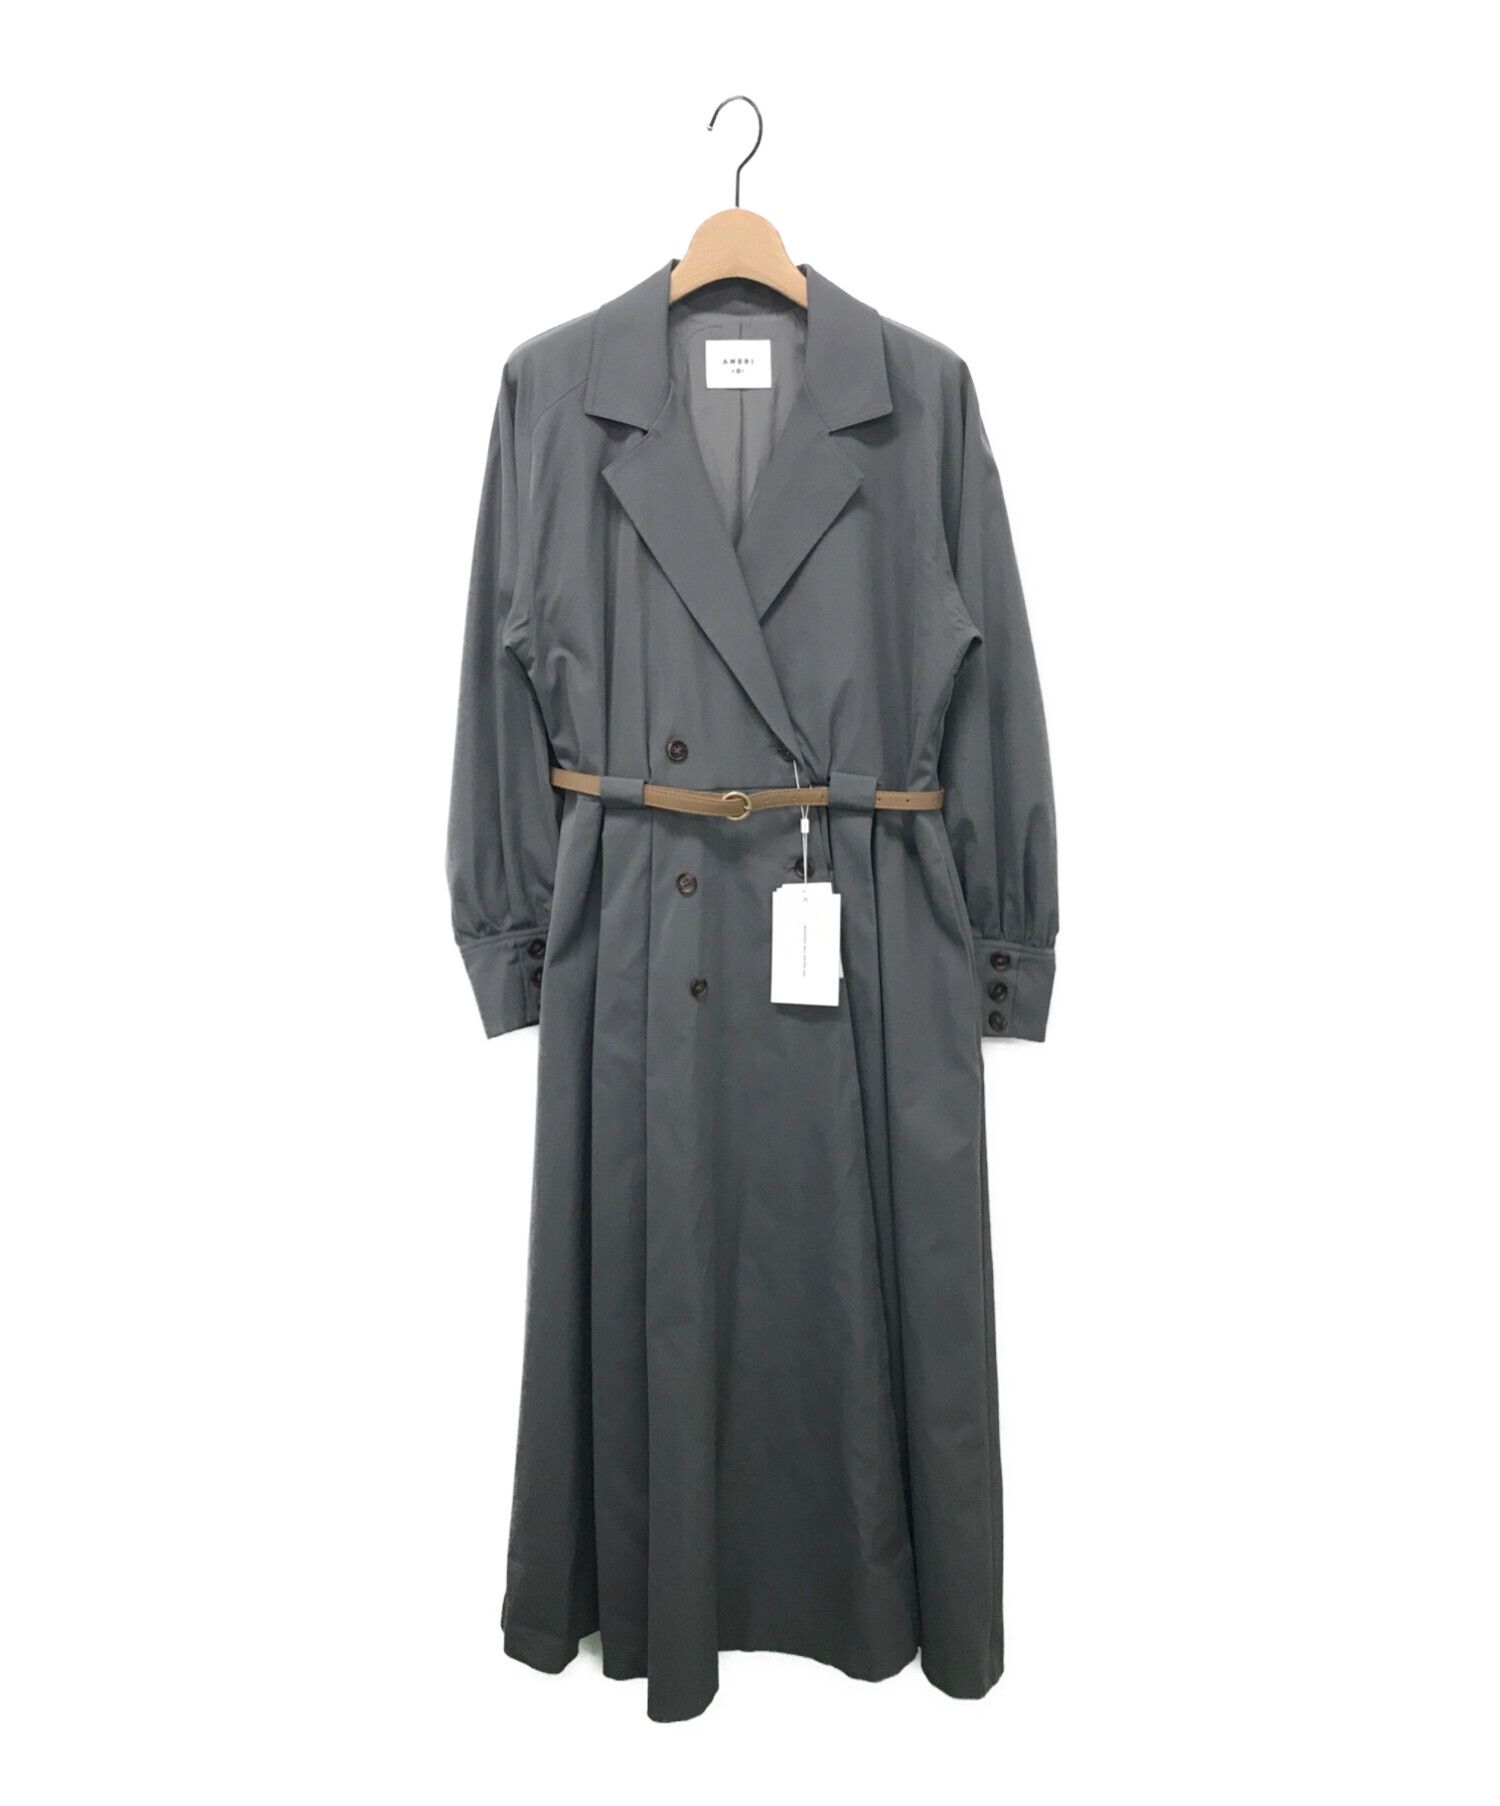 Ameri VINTAGE (アメリヴィンテージ) LONG COAT LIKE BELT DRESS グレー サイズ:M 未使用品